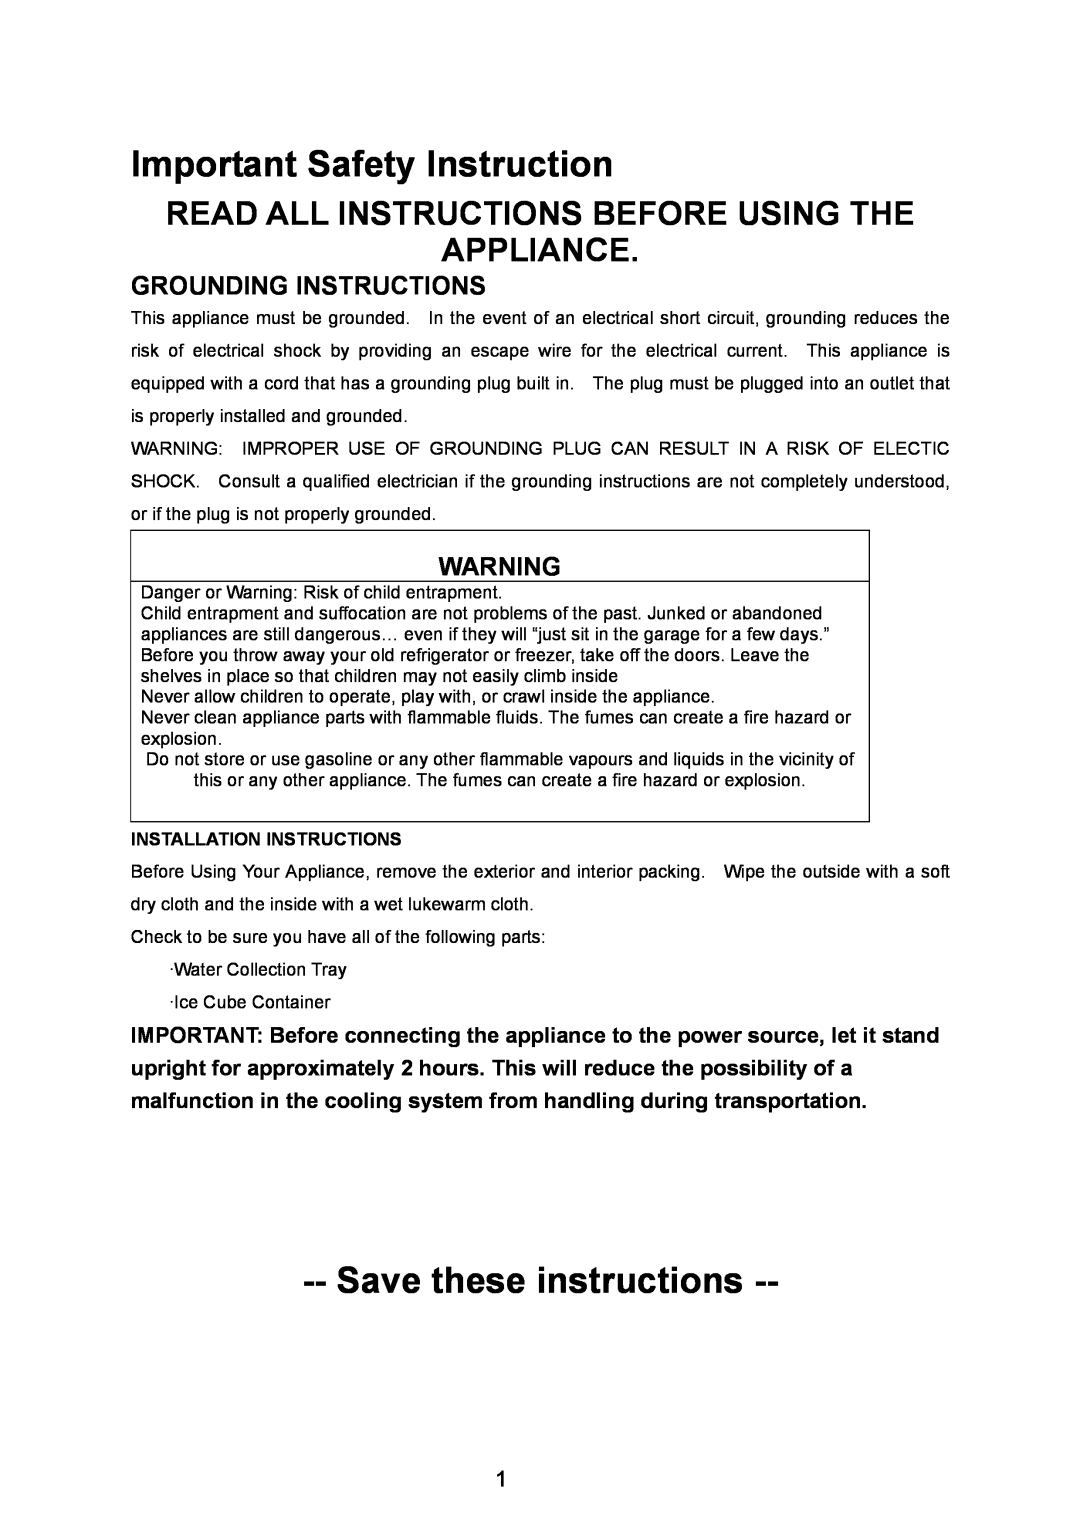 Igloo FR320UK Grounding Instructions, Installation Instructions, Important Safety Instruction, Save these instructions 